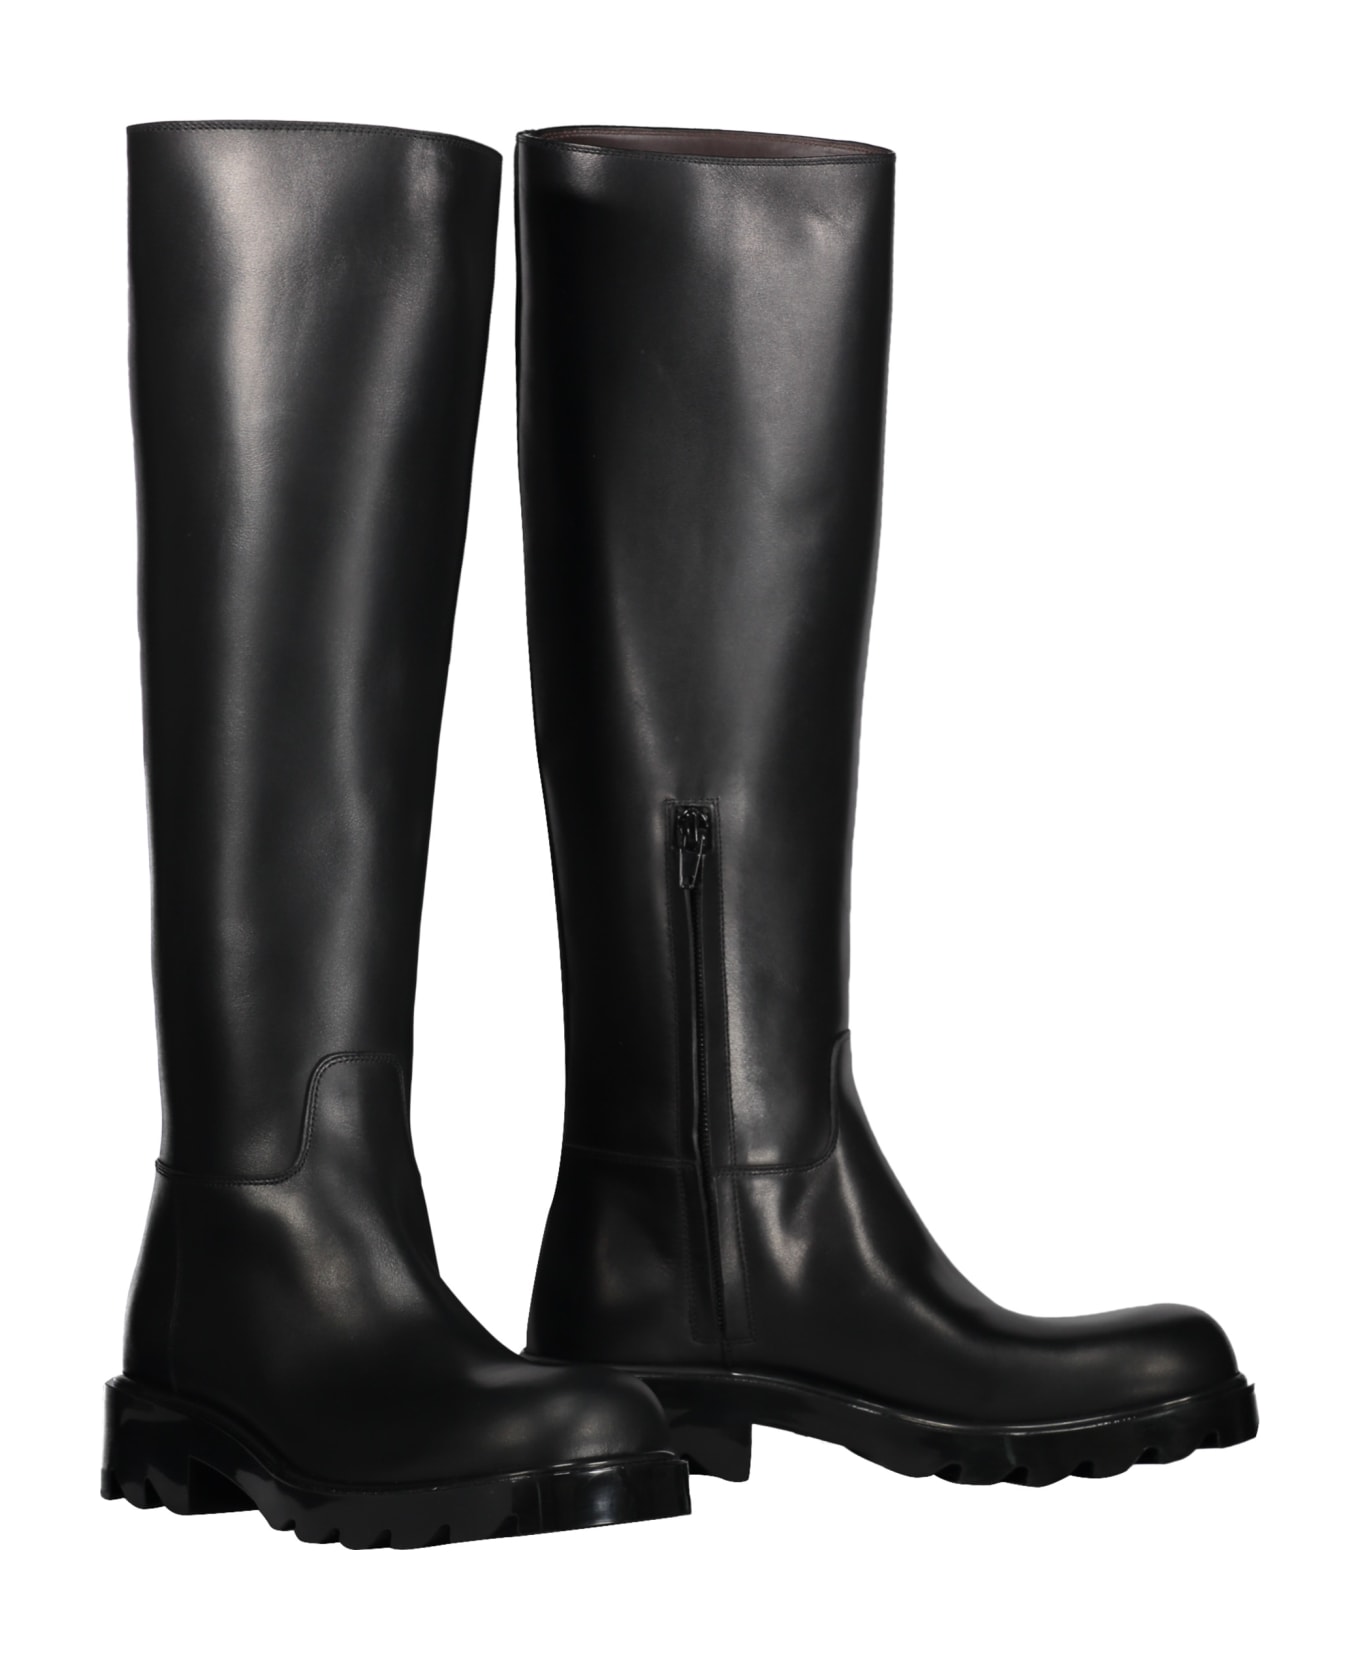 Bottega Veneta Strut Leather Boots - black ブーツ